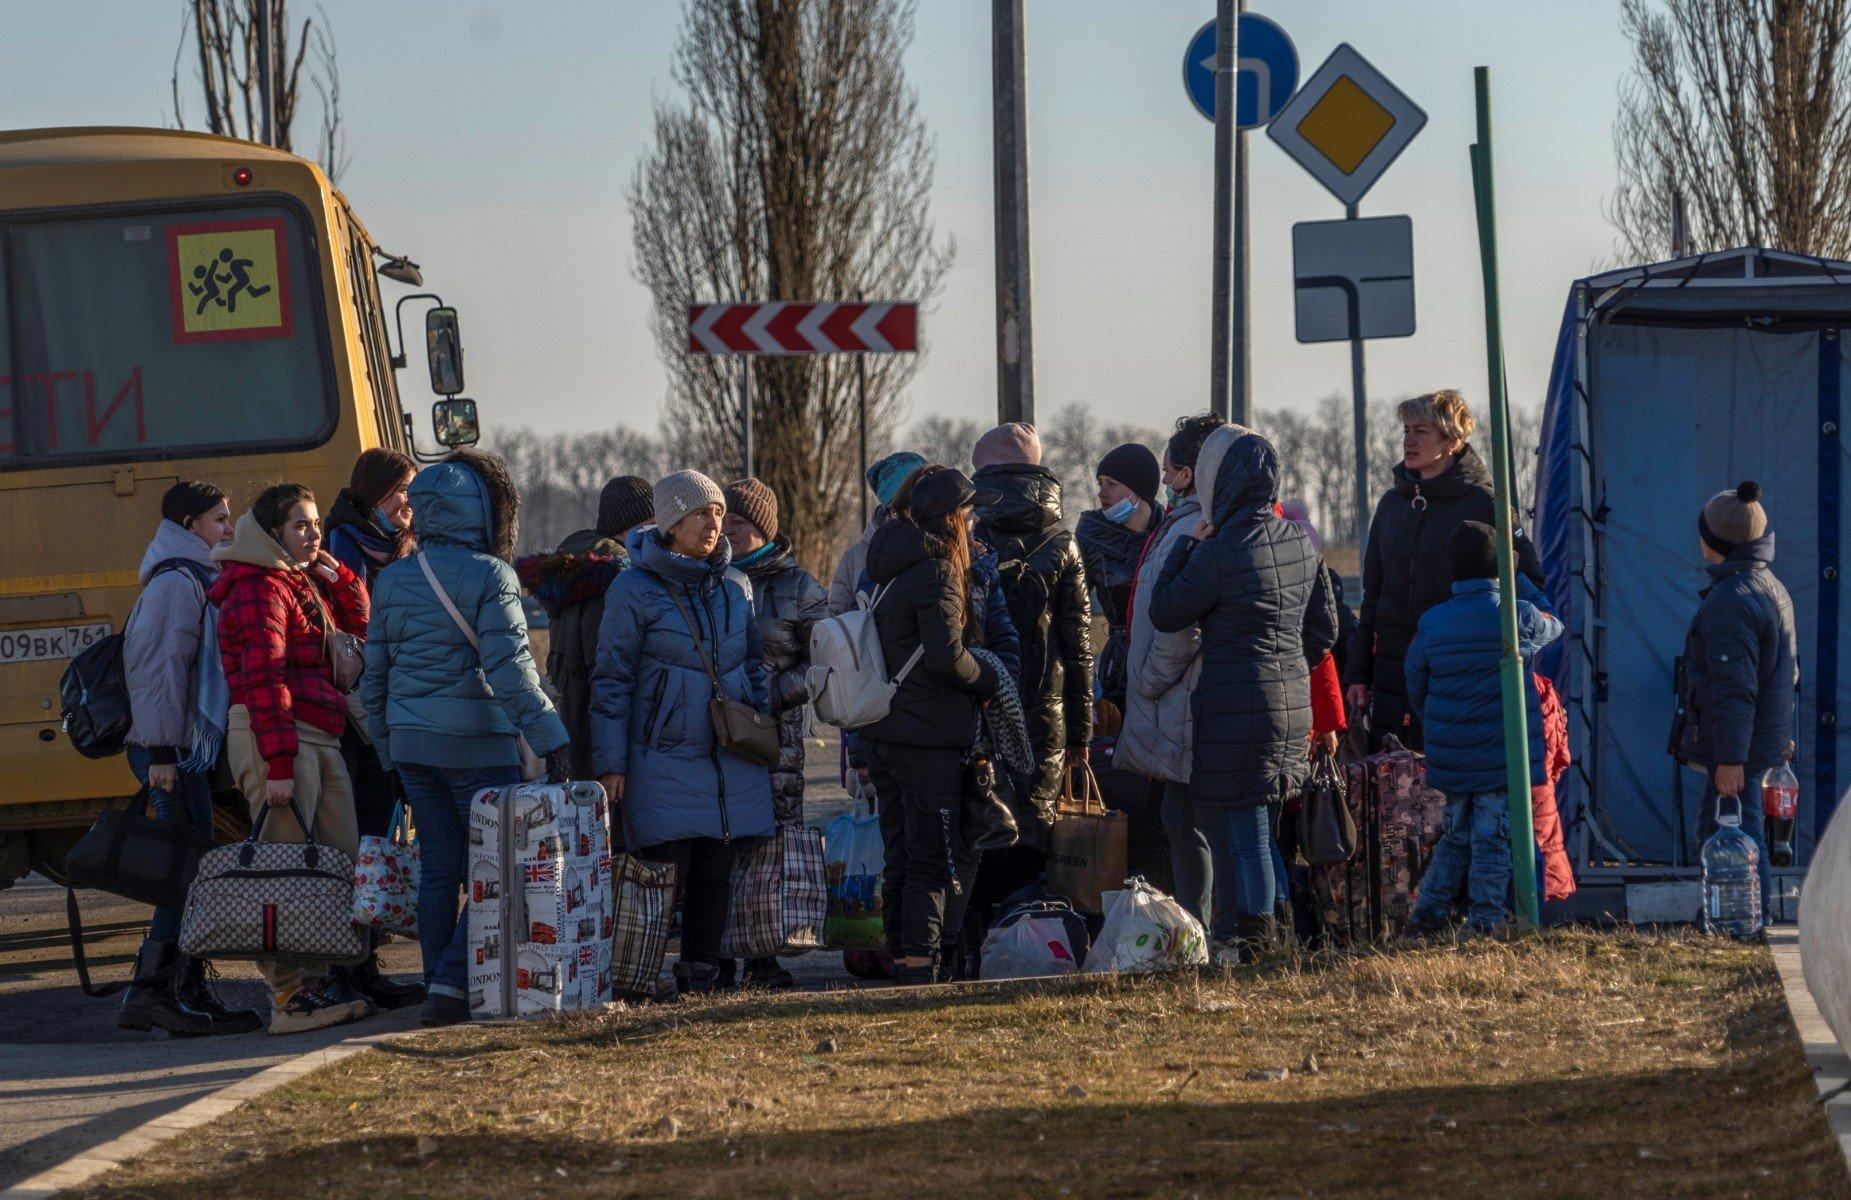 Ludzie w zimowych ubraniach z walizkami i tobołami obok autobusu do przewozu dzieci